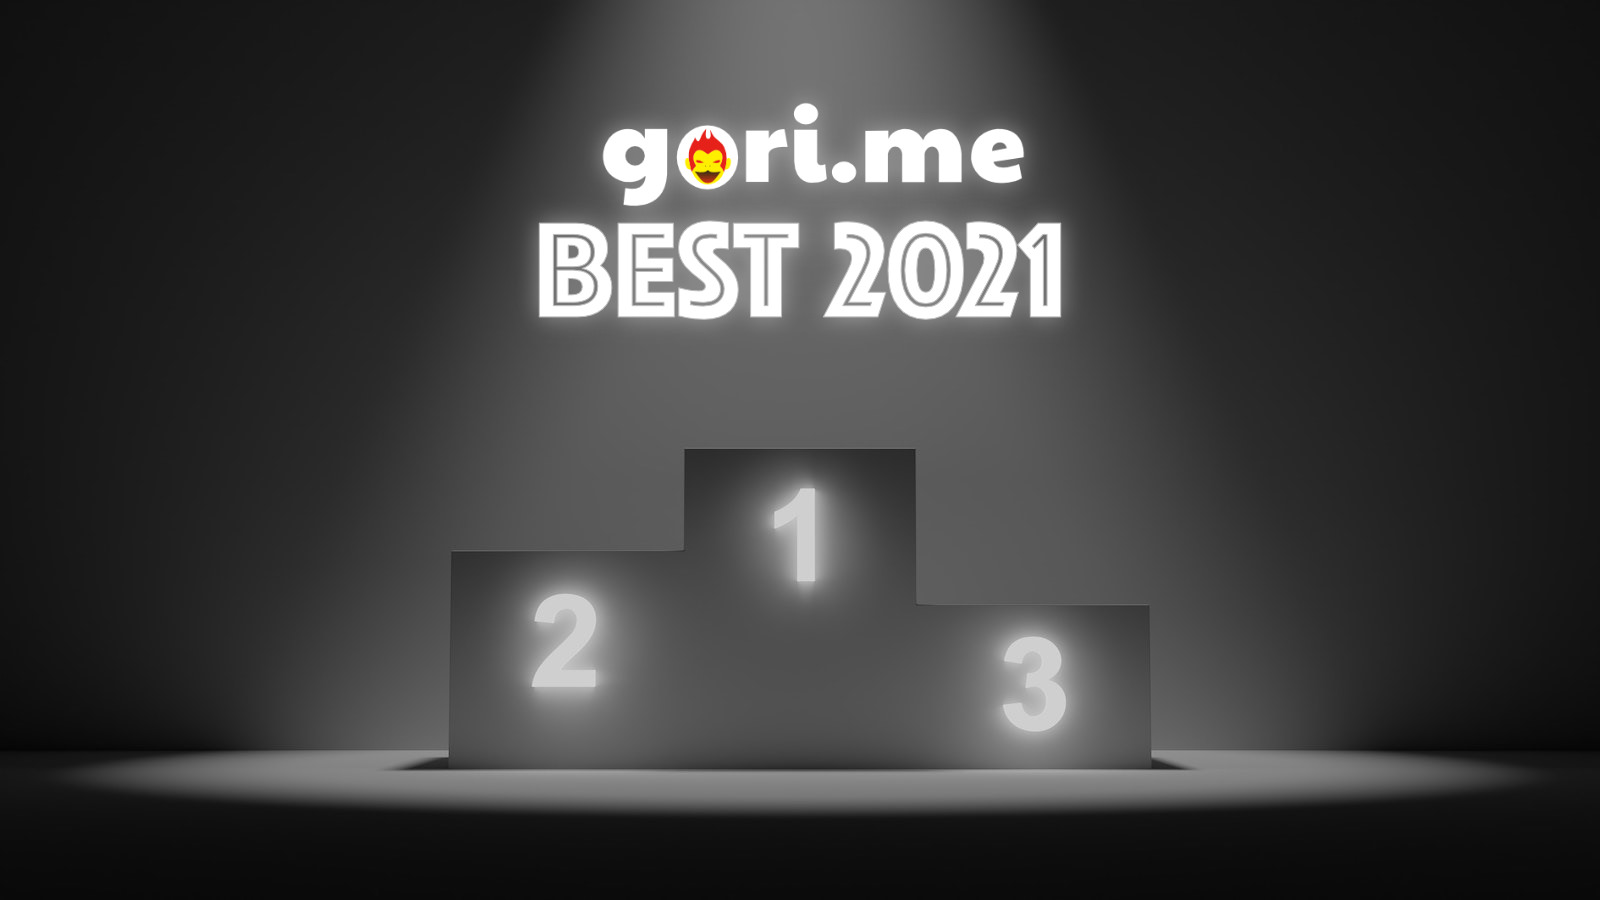 Gorime best 2021